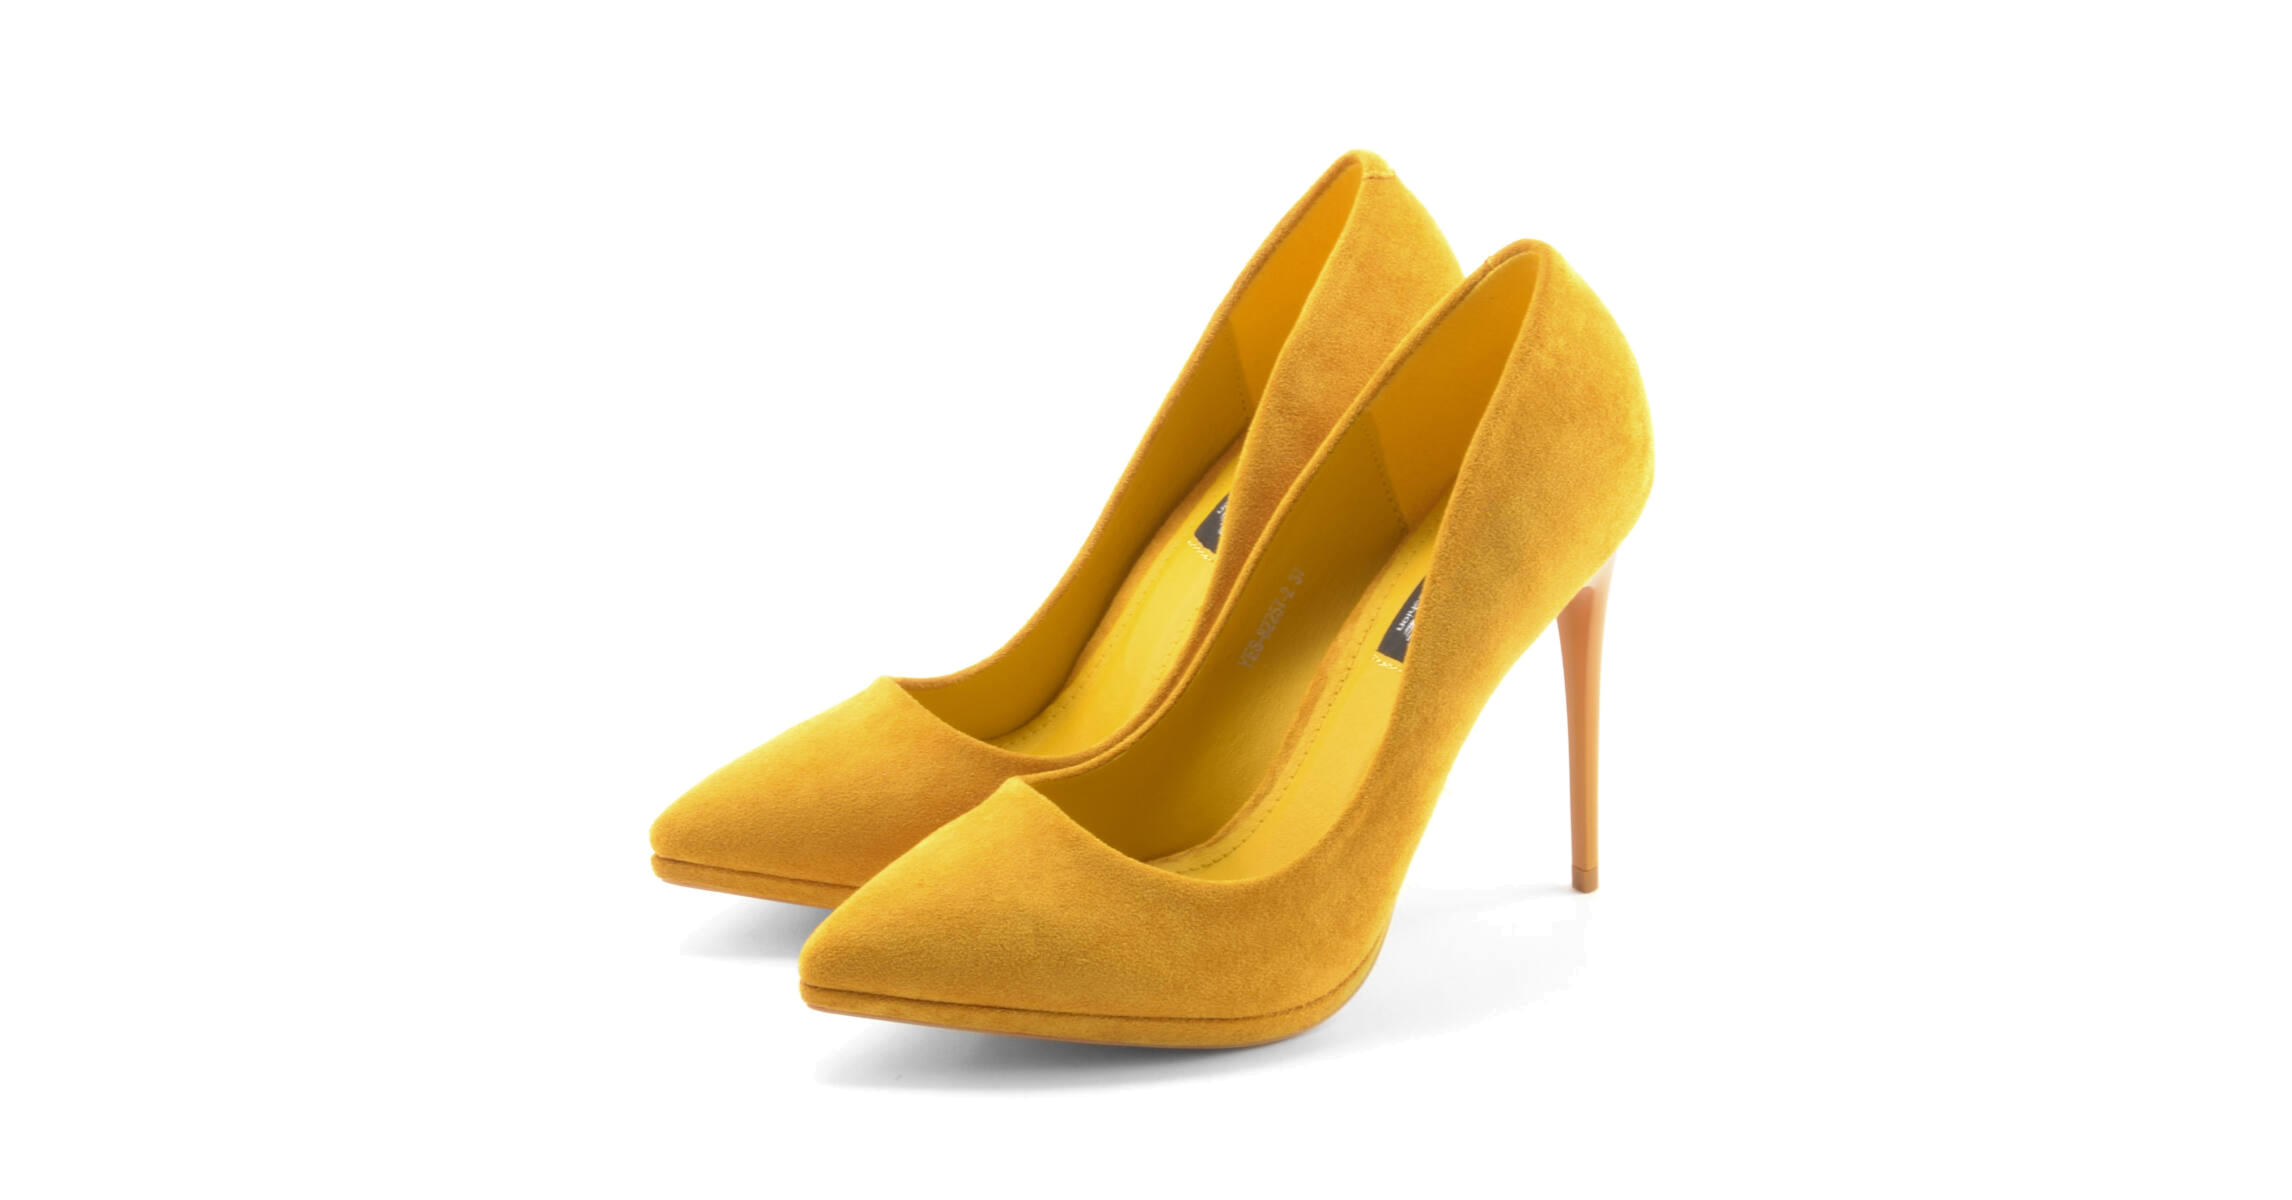 Női Mustársárga Művelúr Magassarkú Cipő - ALKALMI CIPŐK - Női cipő webáruház-női csizmák, női bakancsok, magassarkúk, női gumicsizma, magassarkú csizma, magassarkú szandál, női gumicsizma